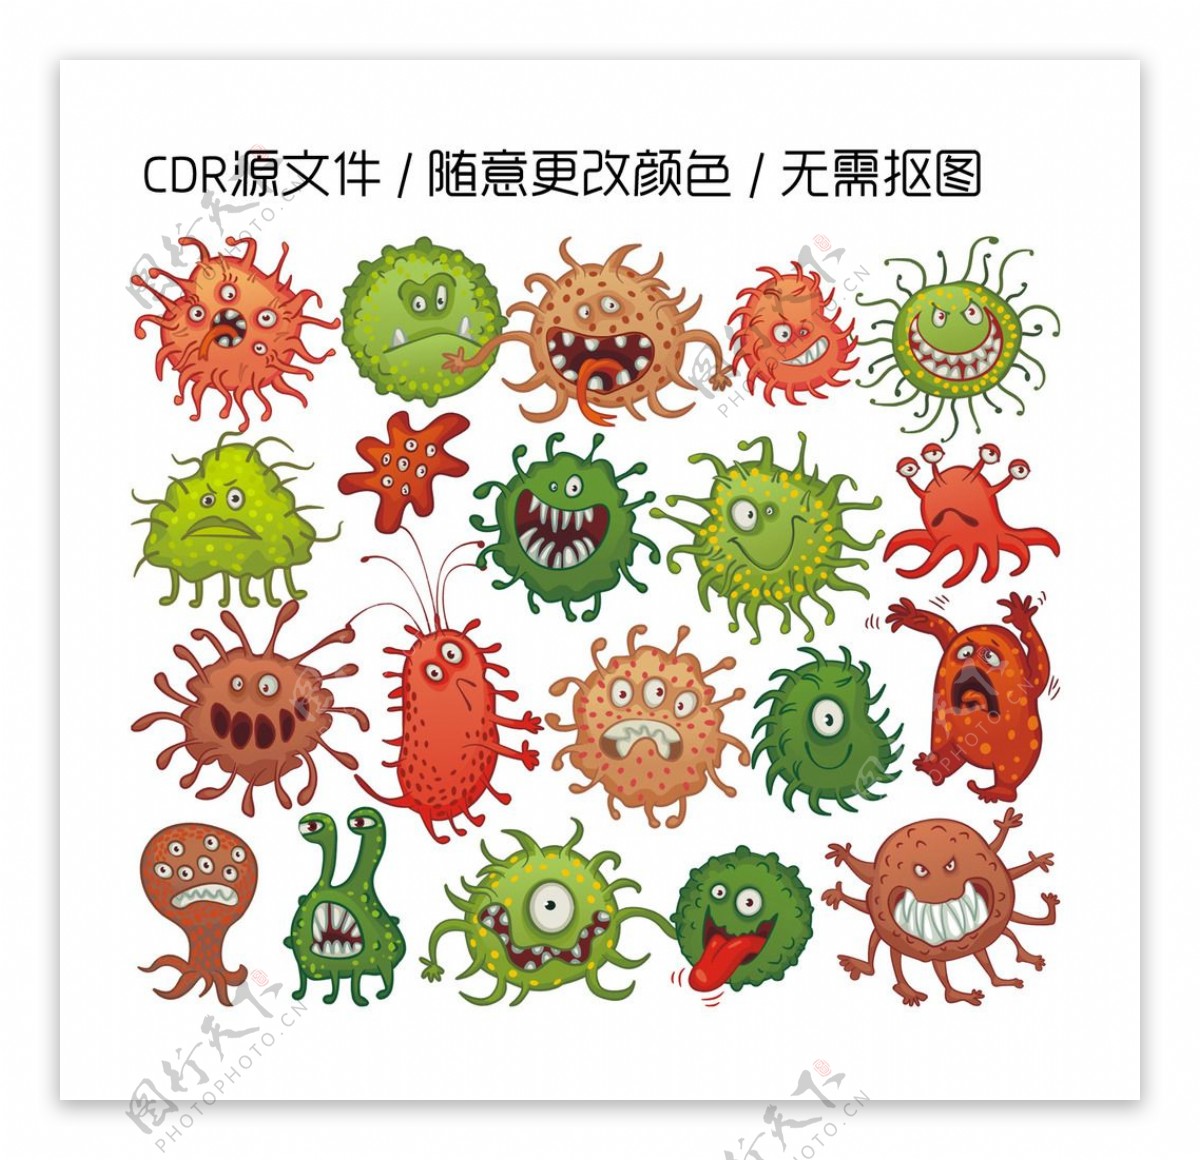 紫色的細菌 卡通插畫 細菌插畫 病菌插畫, 細菌剪貼畫, 紫色細菌, 卡通的插畫素材圖案，PSD和PNG圖片免費下載